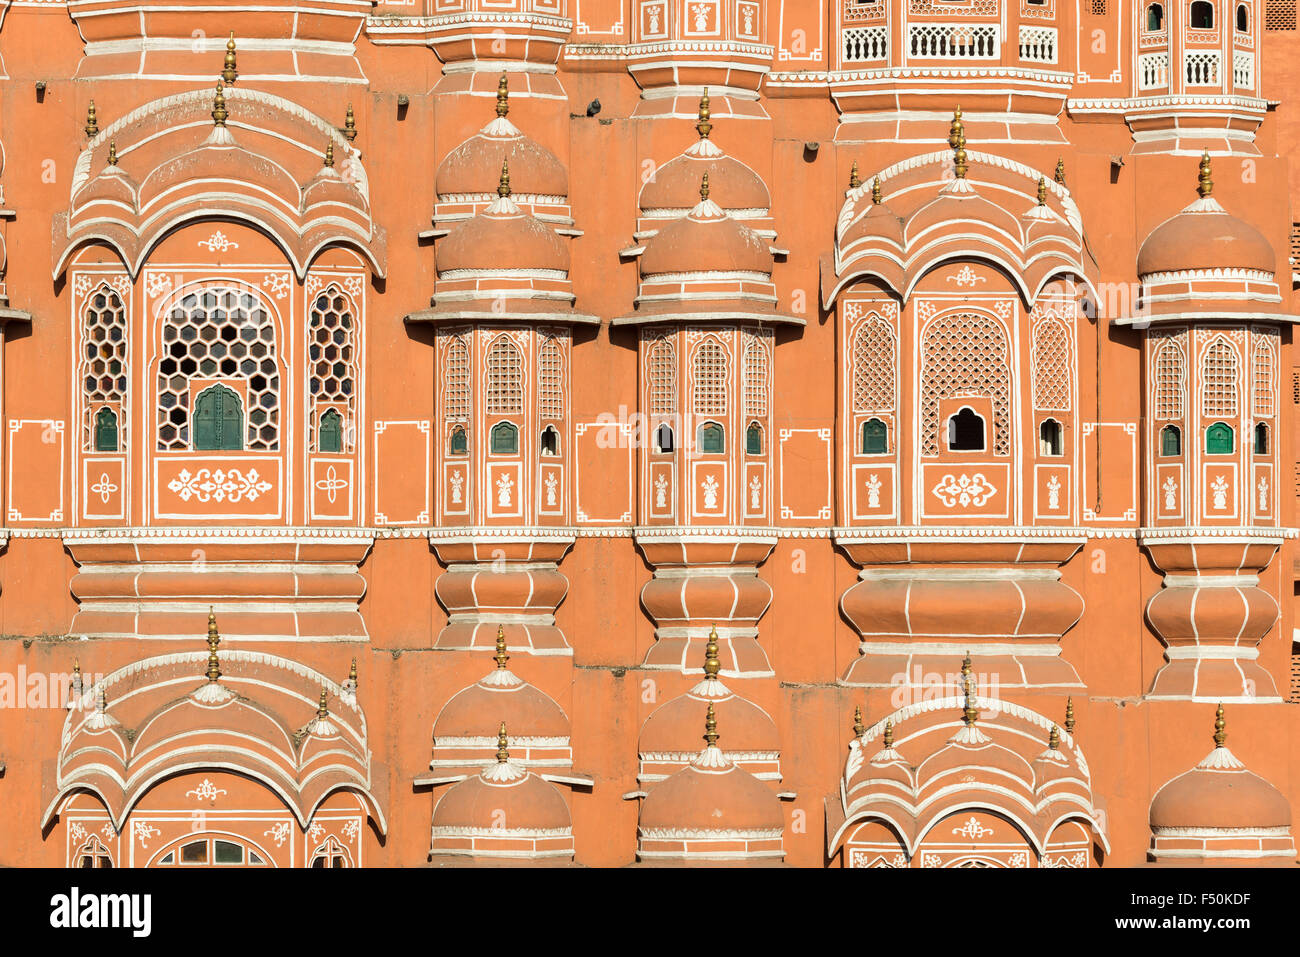 Dettaglio del Hawa Mahal, palazzo dei venti, una delle maggiori attrazioni turistiche della cinta di mura della città rosa Foto Stock